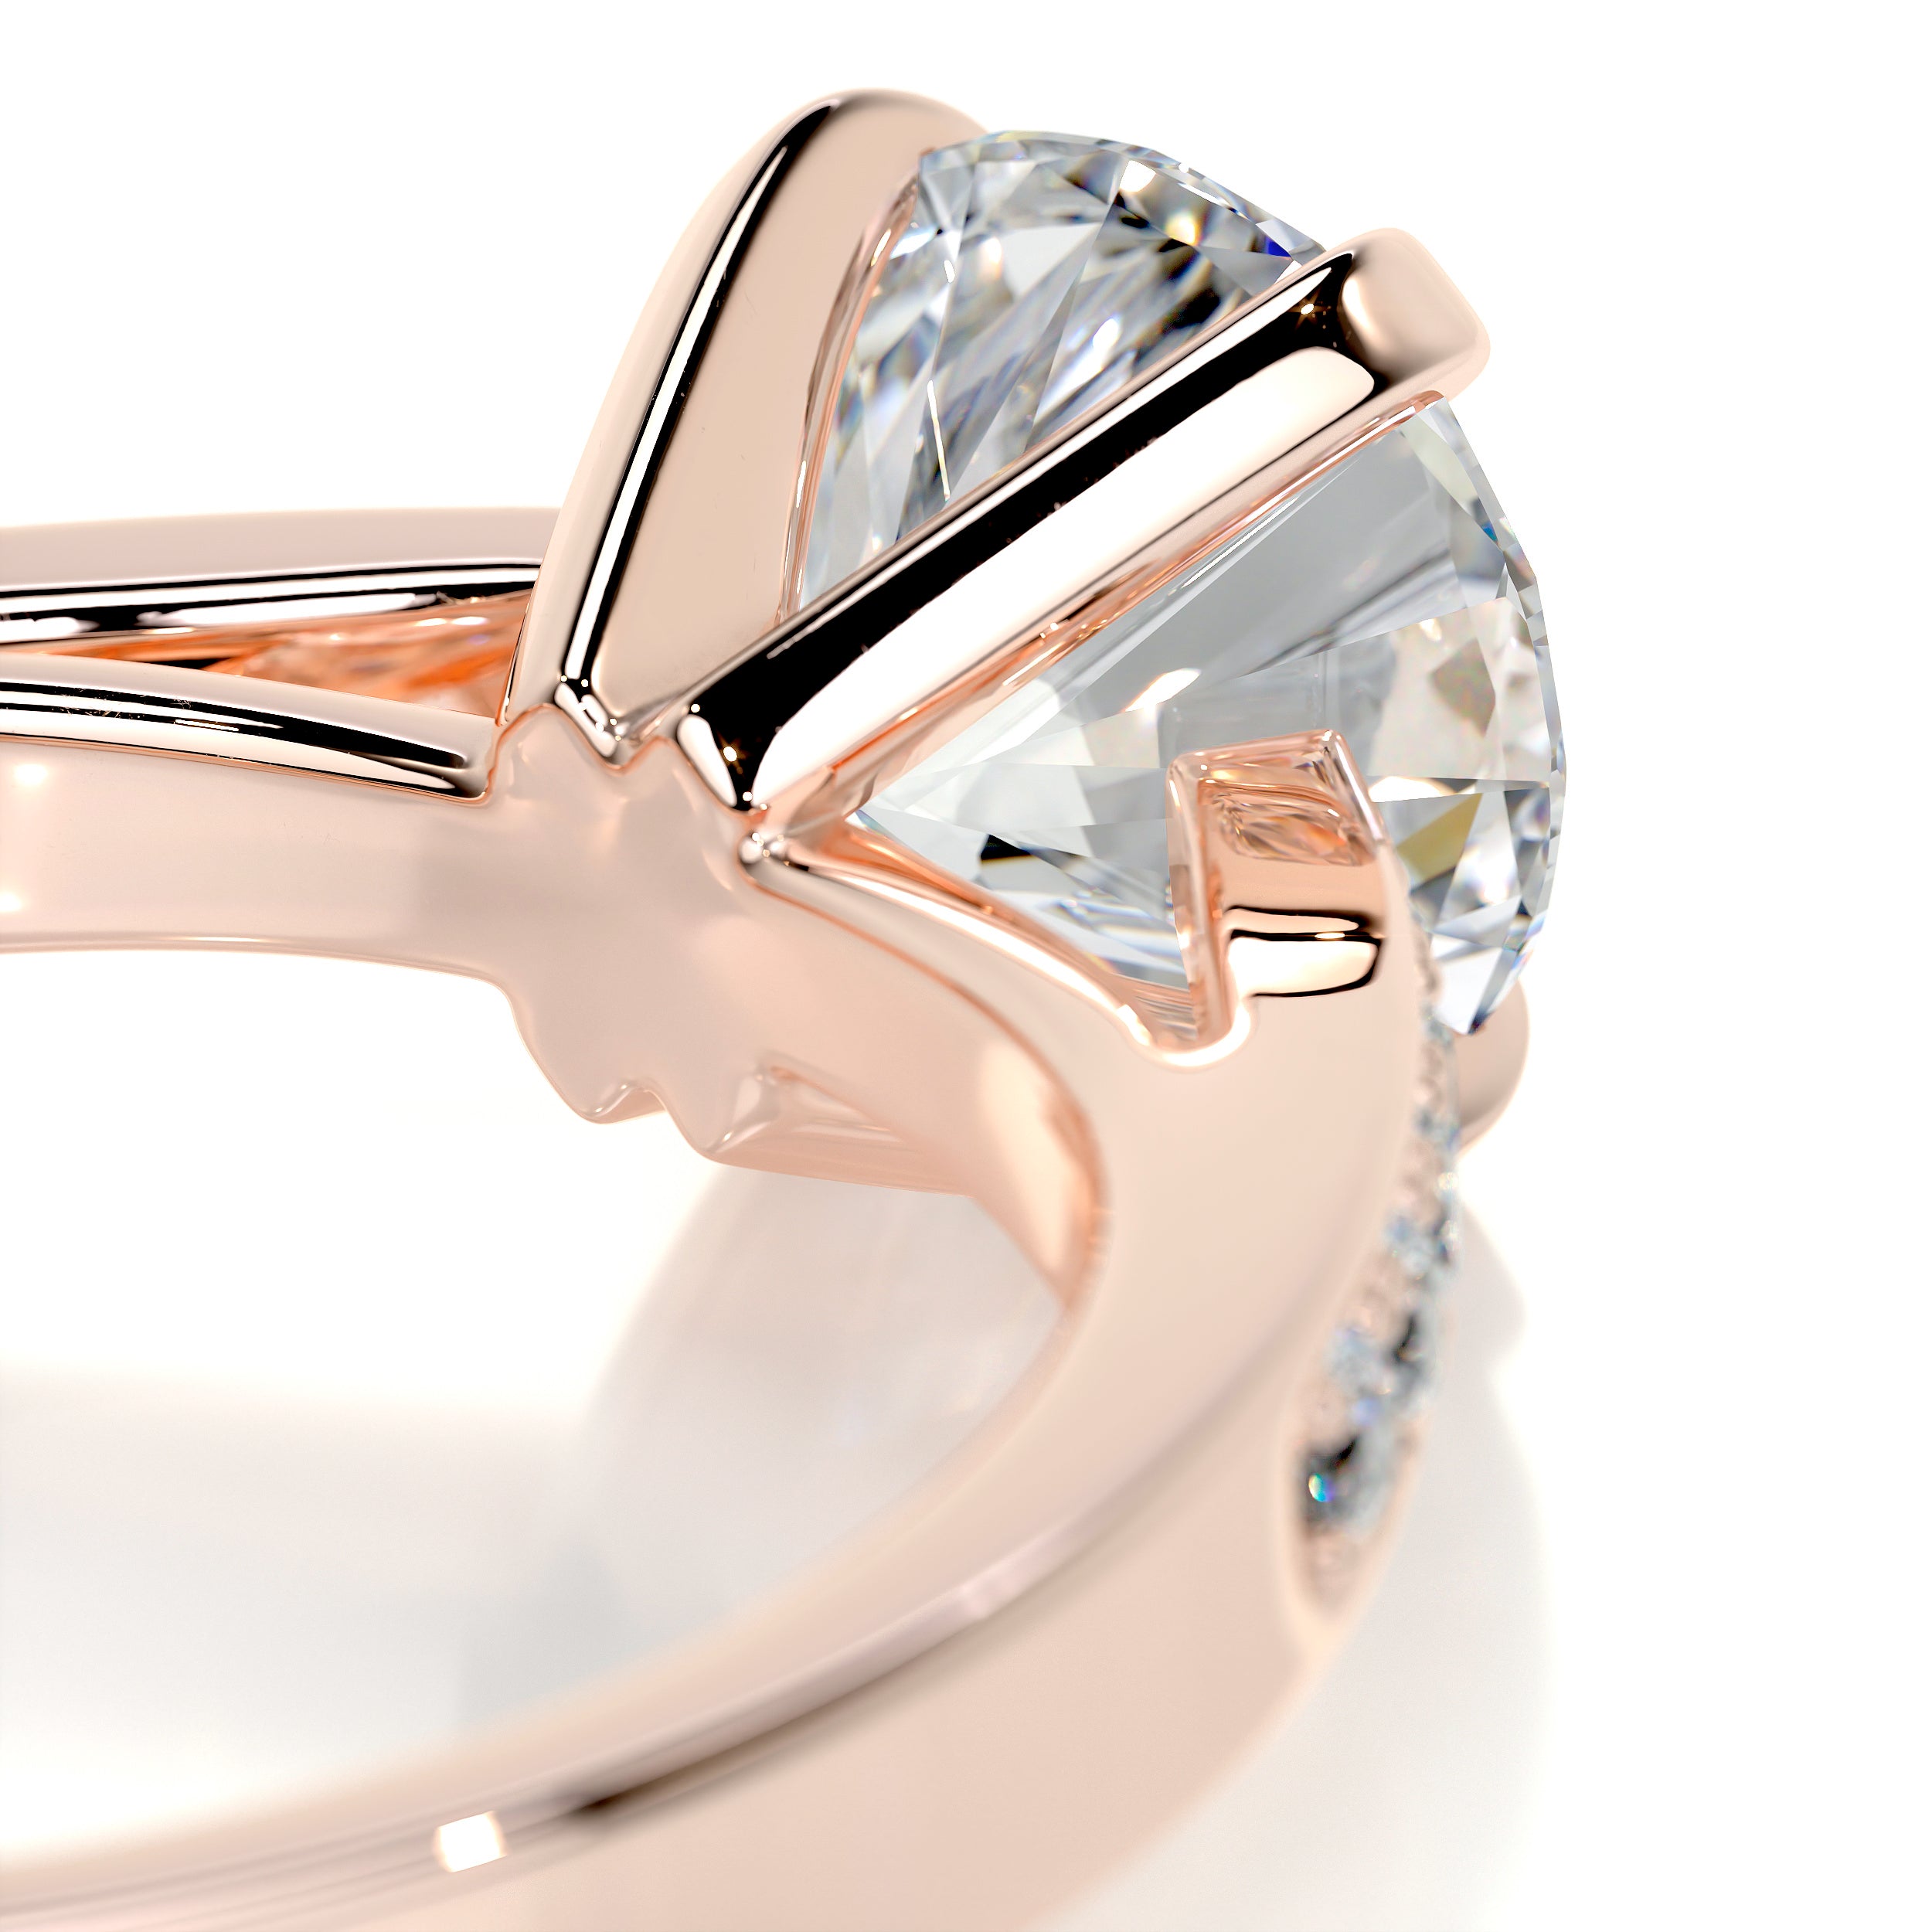 Margaret Diamond Engagement Ring   (1.35 Carat) -14K Rose Gold